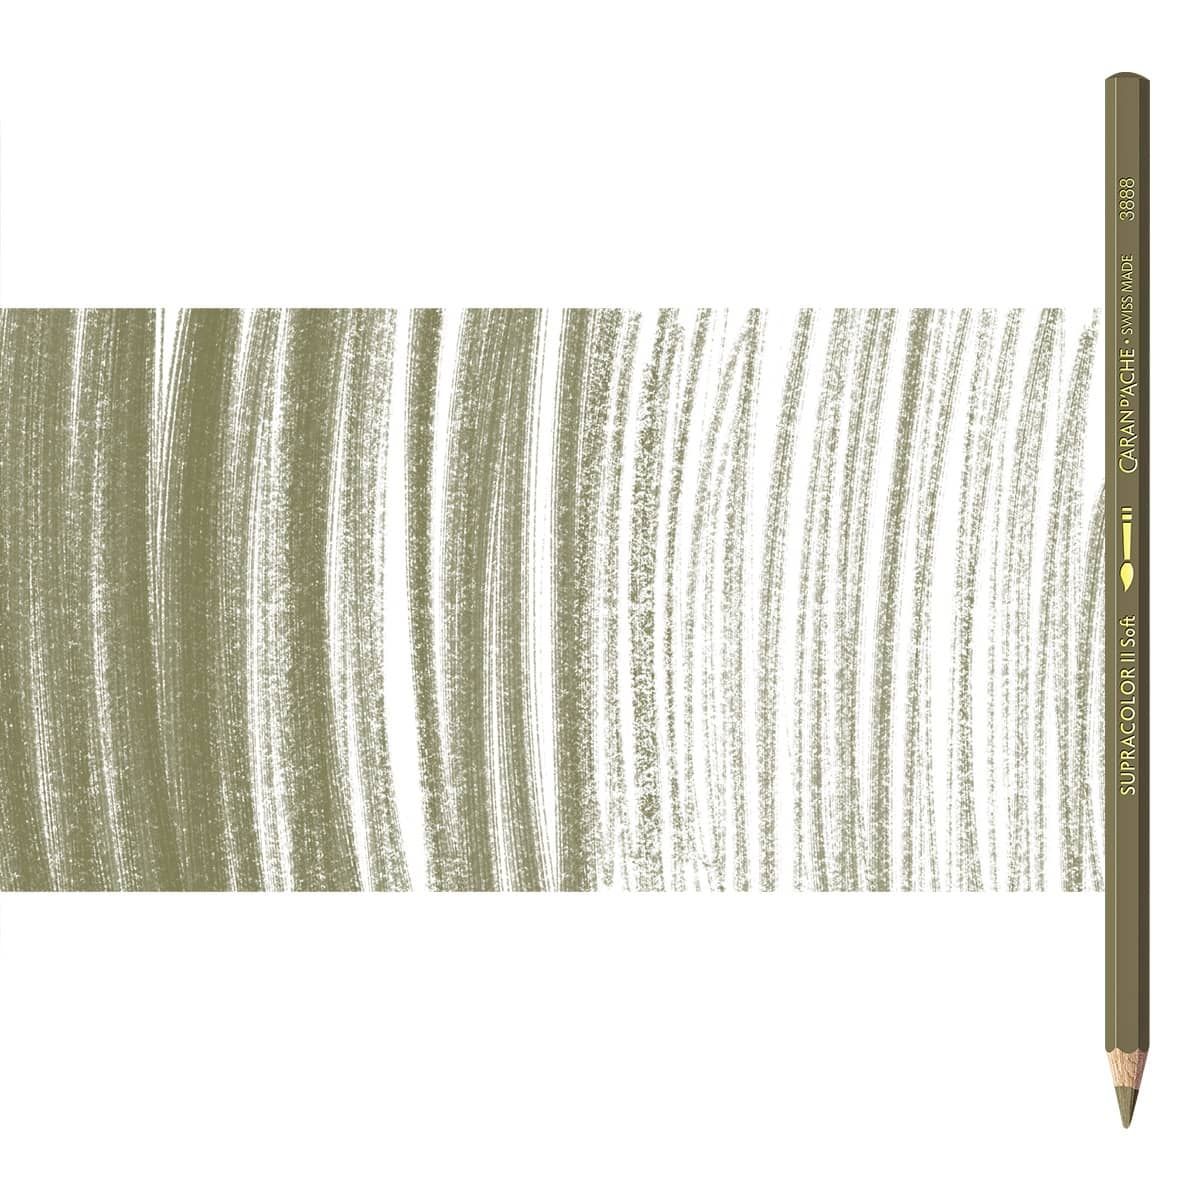 Supracolor II Watercolor Pencils Individual No. 039 - Olive Brown